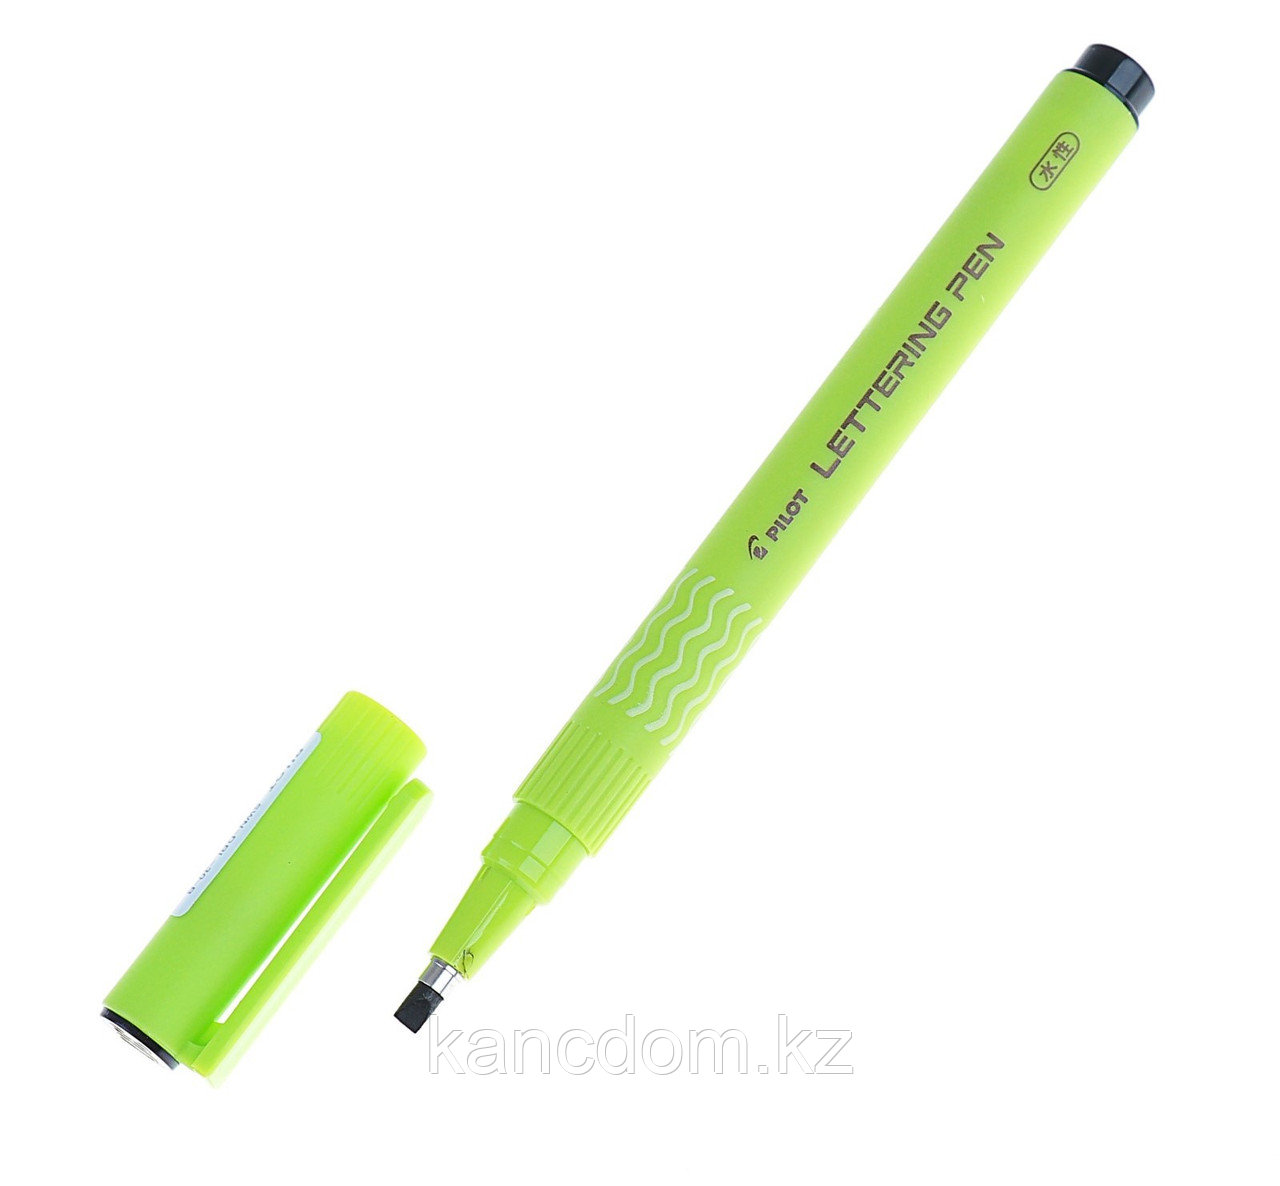 Ручка капиллярная PILOT Lettering Pen 0.3 мм, черная, для леттеринга, каллиграфии, скетчинга, черчен